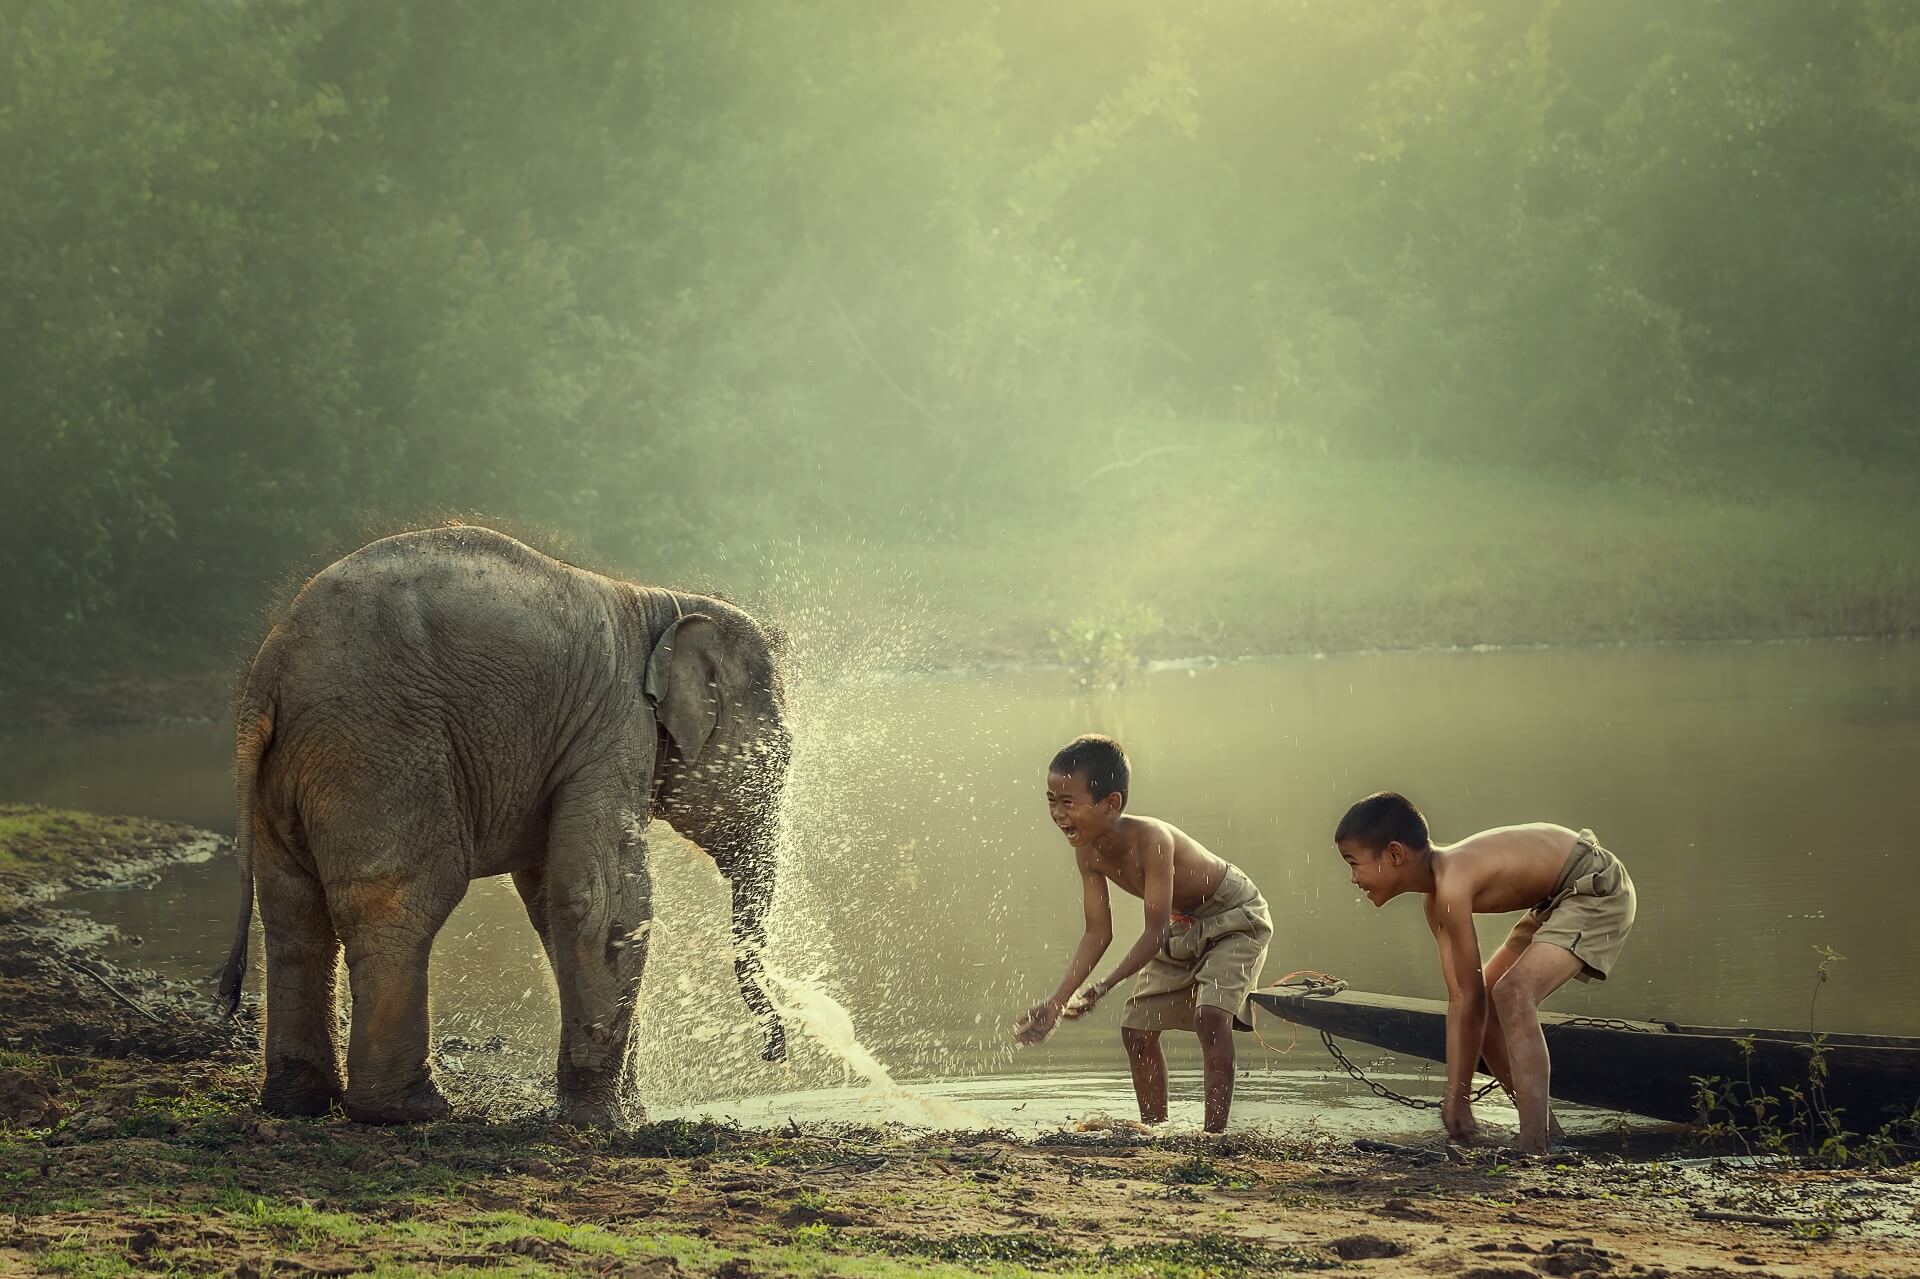 Kinder spielen mit einem kleinen Elefanten